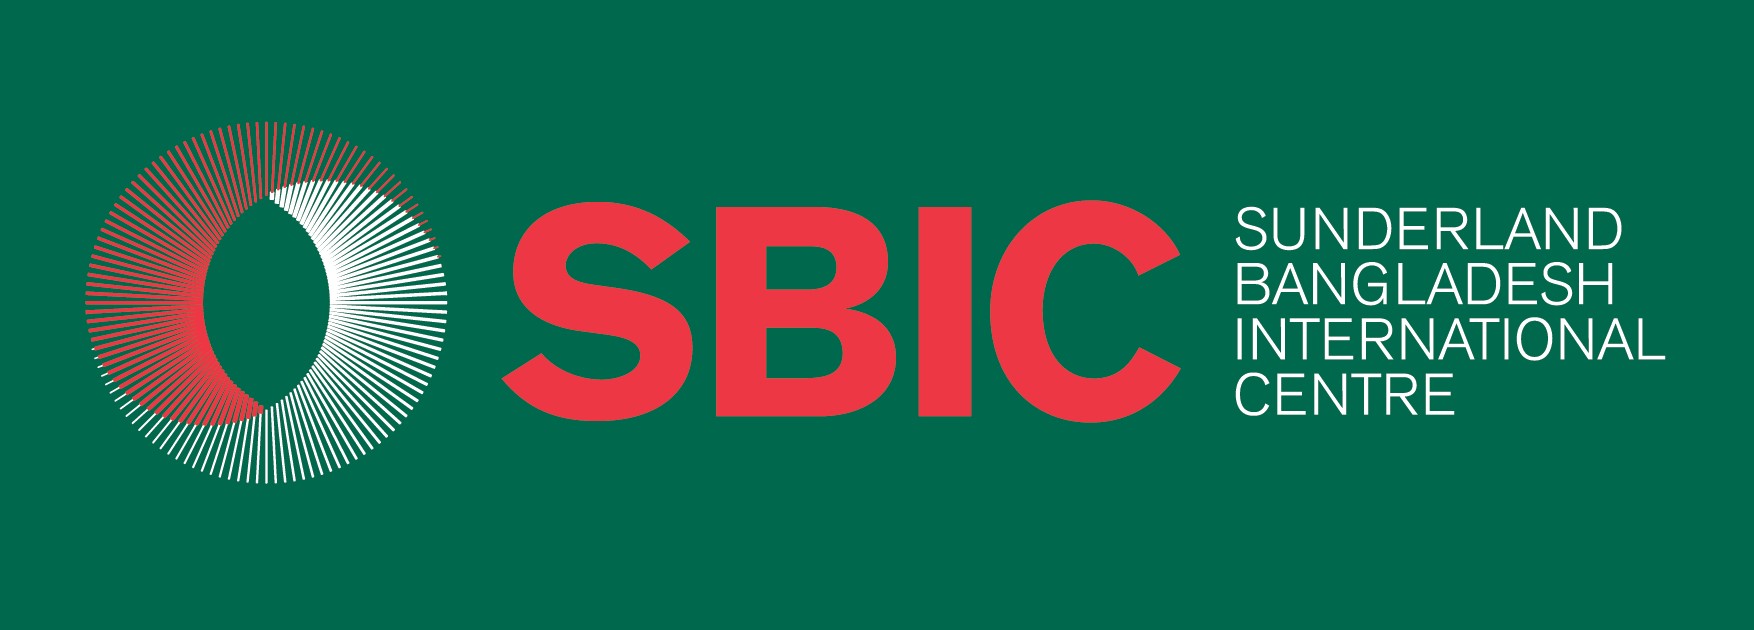 SBIC master logo full white on green